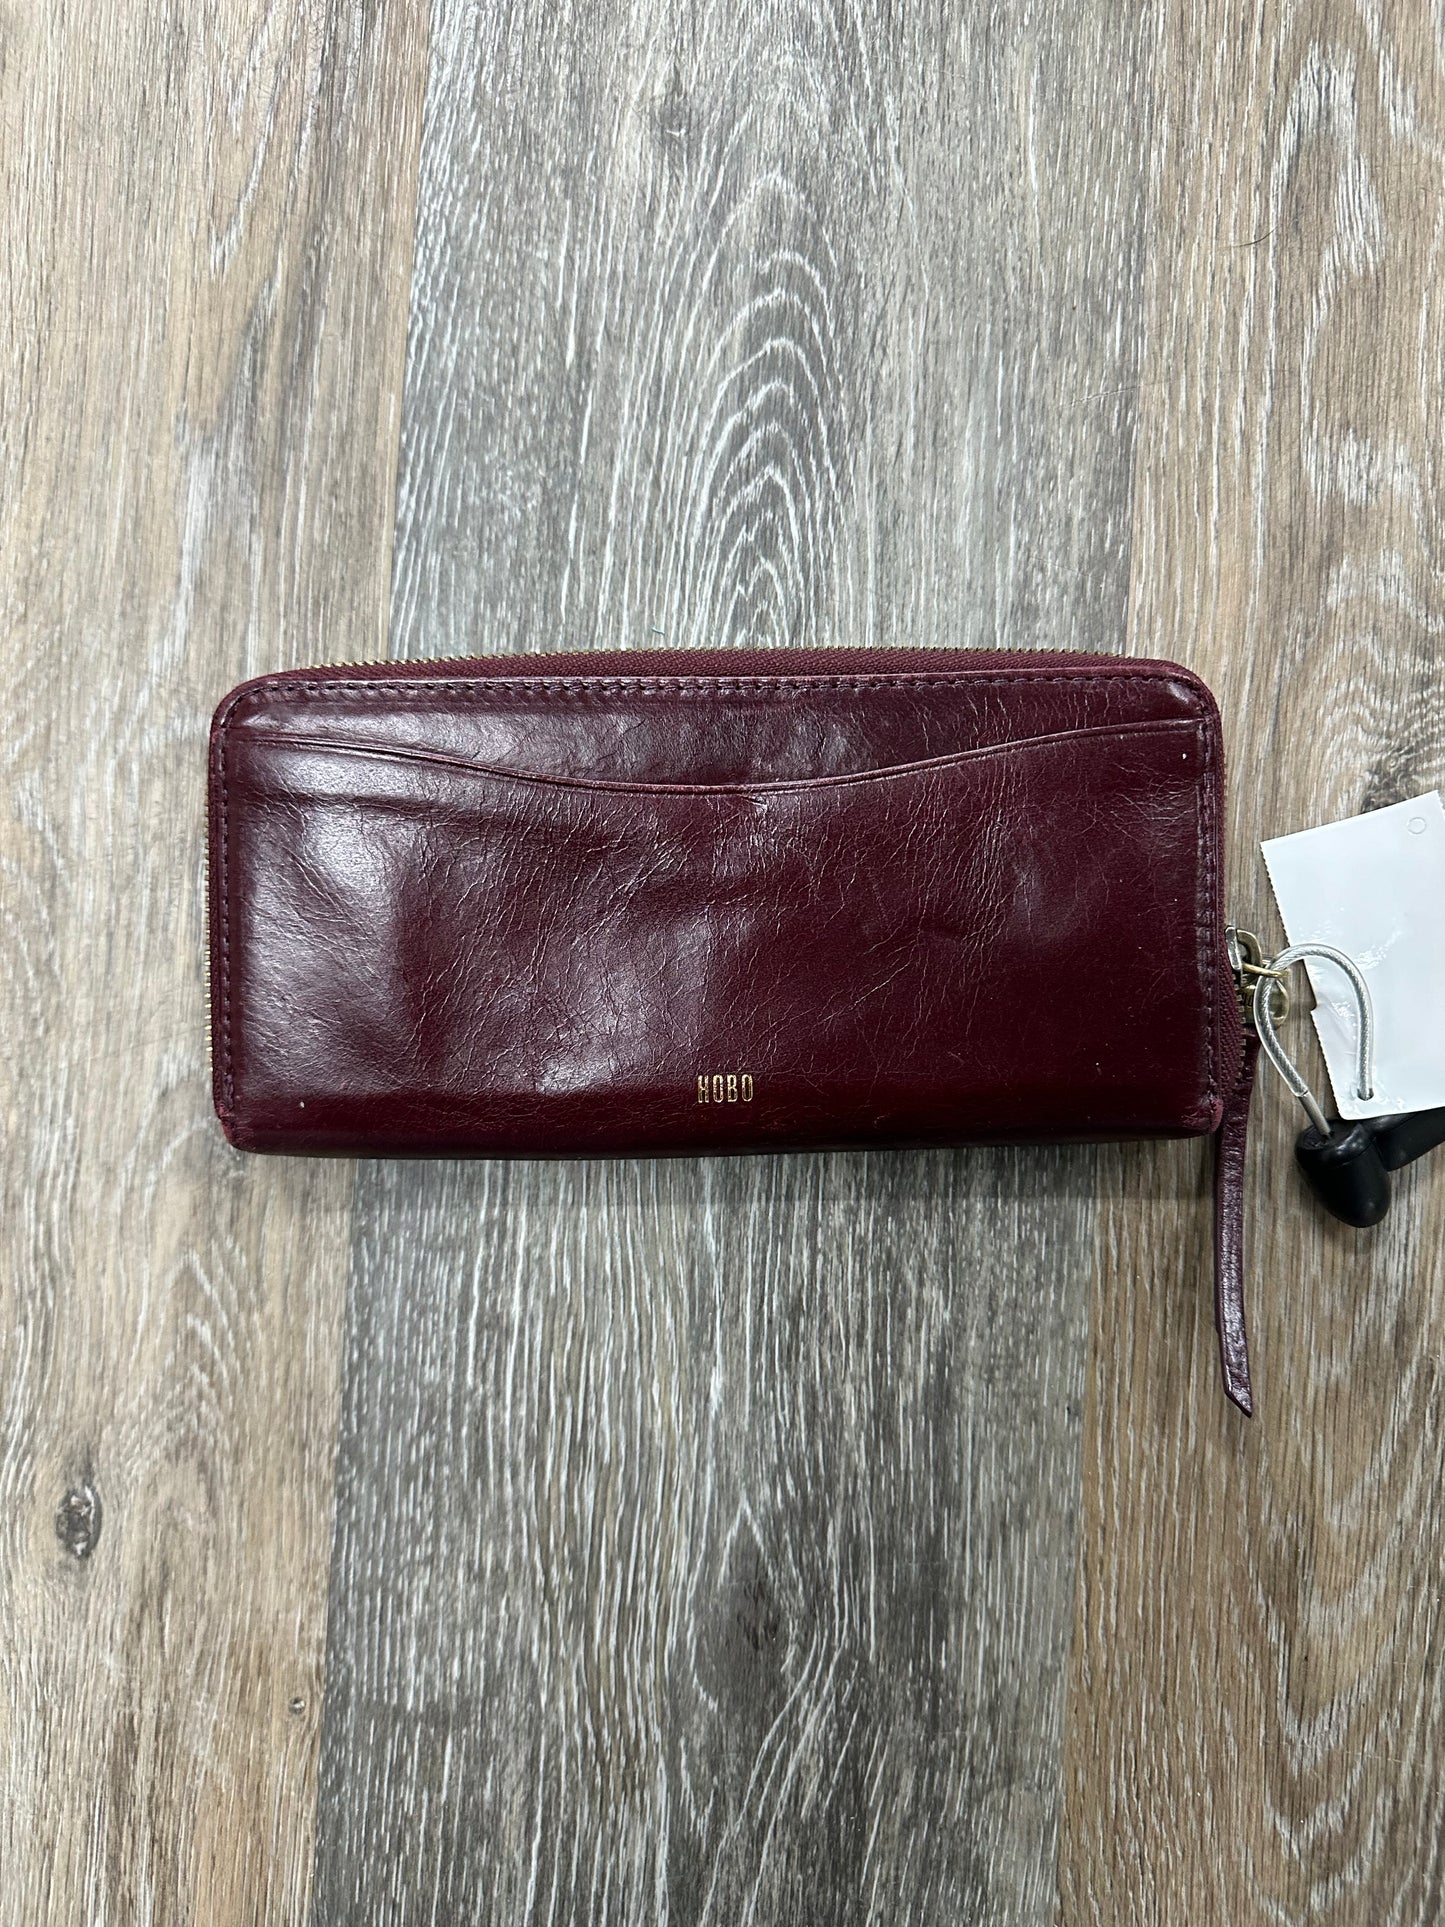 Wallet Designer By Hobo Intl  Size: Medium